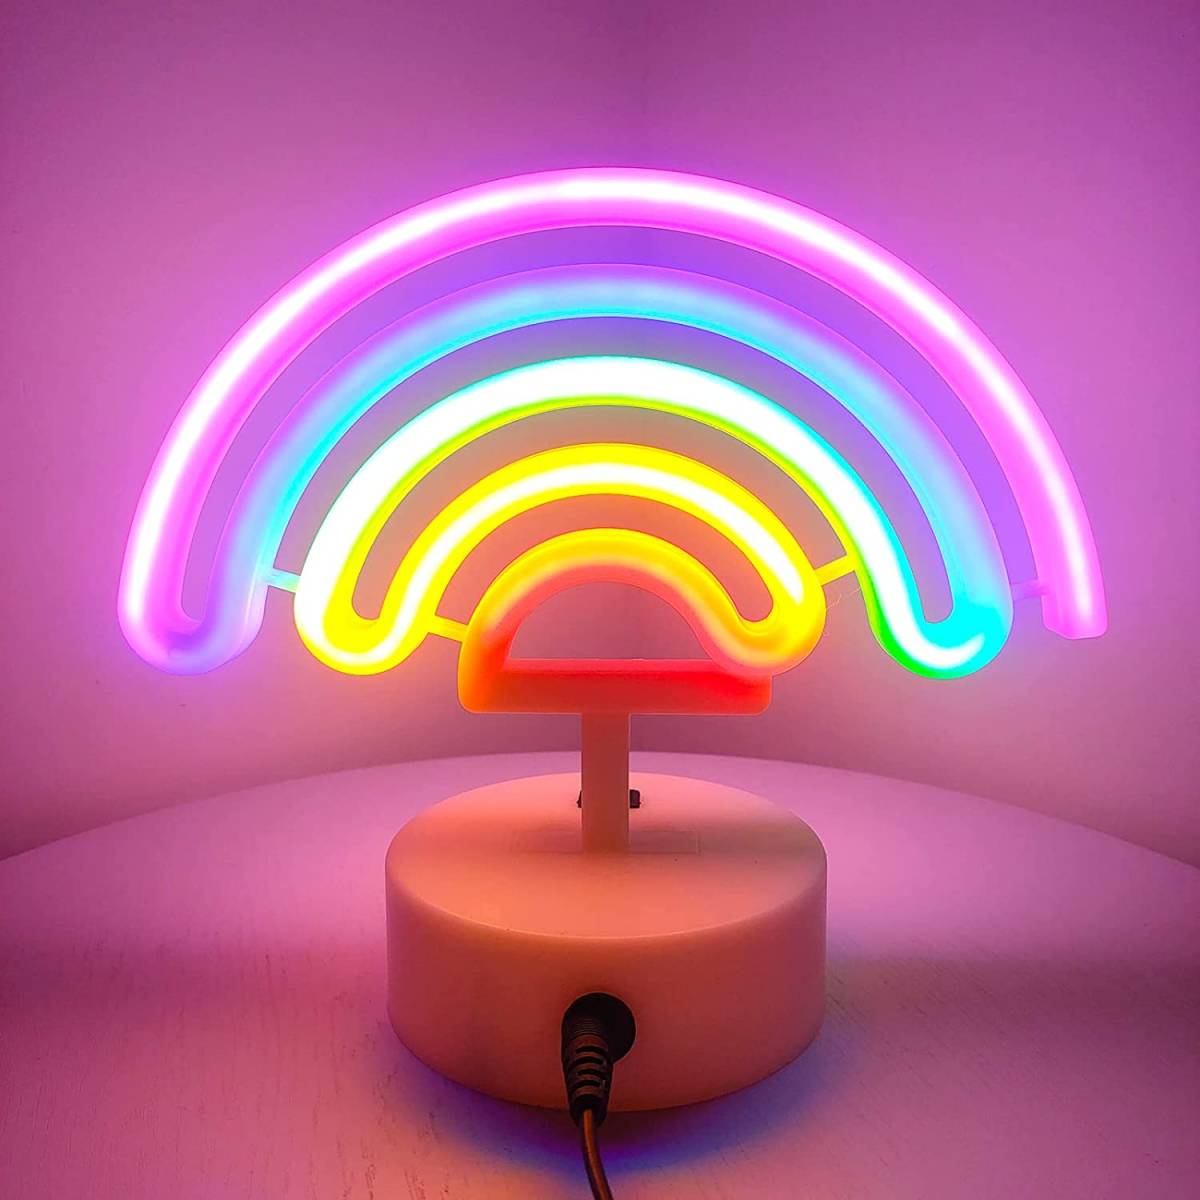 ネオンサイン レインボーライト 5色の虹 子供部屋に最適 電池&USB給電 ルームデコレーション ナイトライト 雰囲気作り 贈り物 室内飾り_画像5